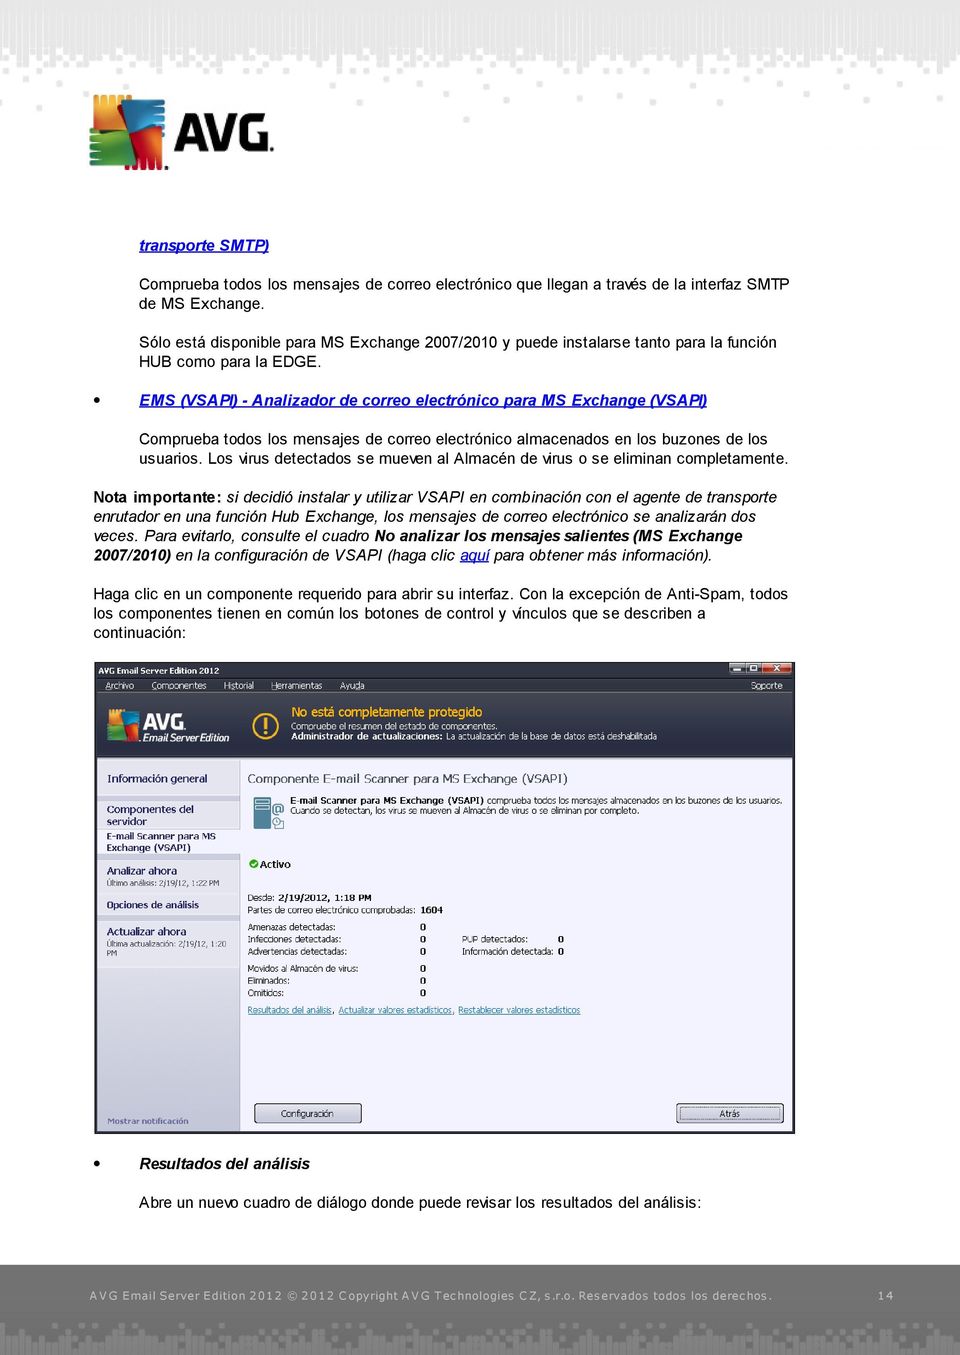 EMS (VSAPI) - Analizador de correo electrónico para MS Exchange (VSAPI) Comprueba todos los mensajes de correo electrónico almacenados en los buzones de los usuarios.